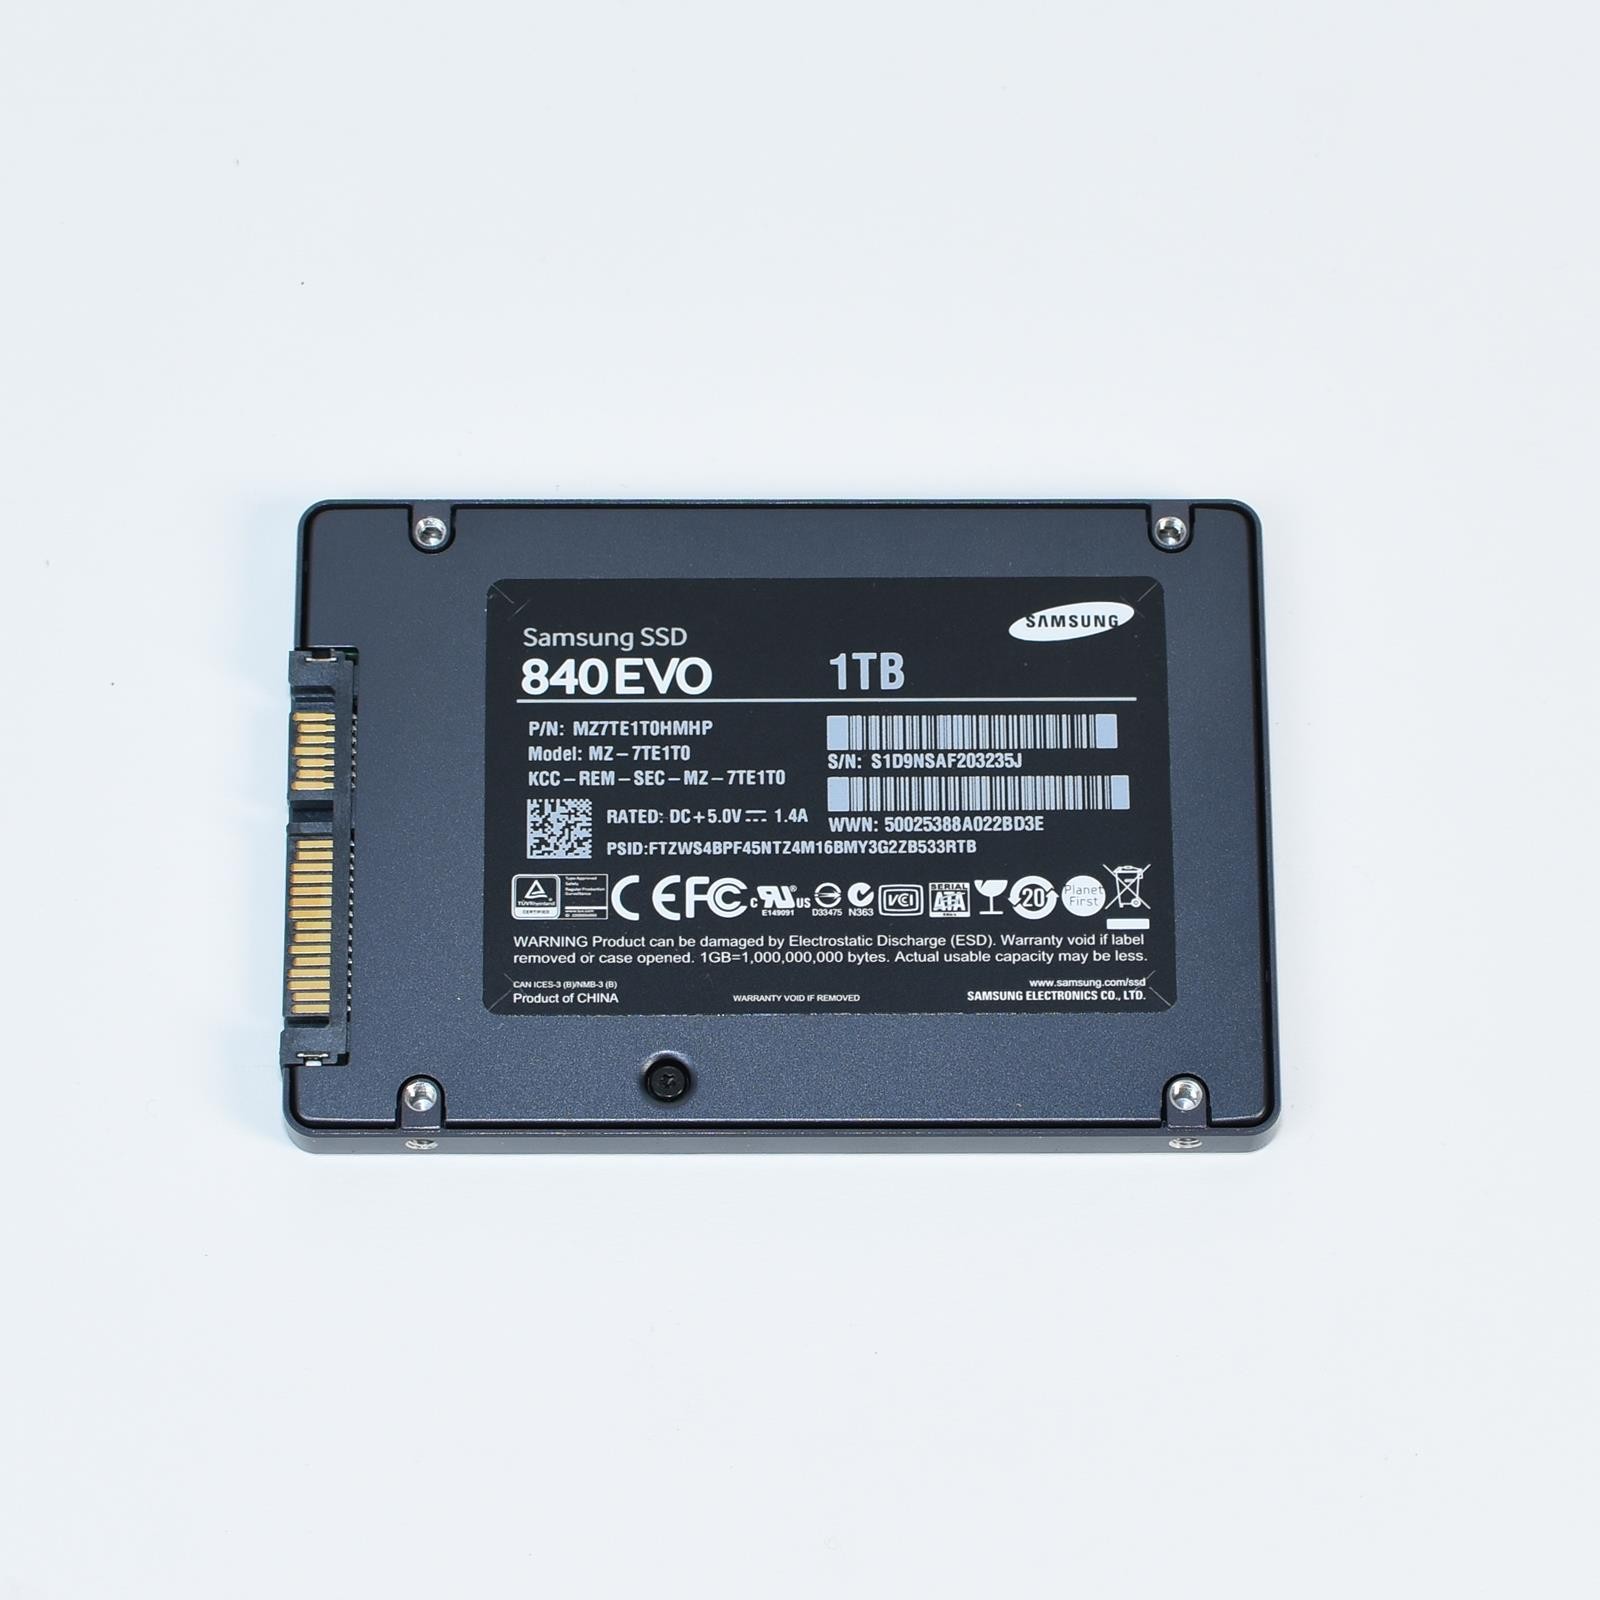 Samsung SSD 840 EVO 1TB Solid State Drive 2.5" SATAIII MZ-7TE1T0 MZ-7TE1T0HMHP